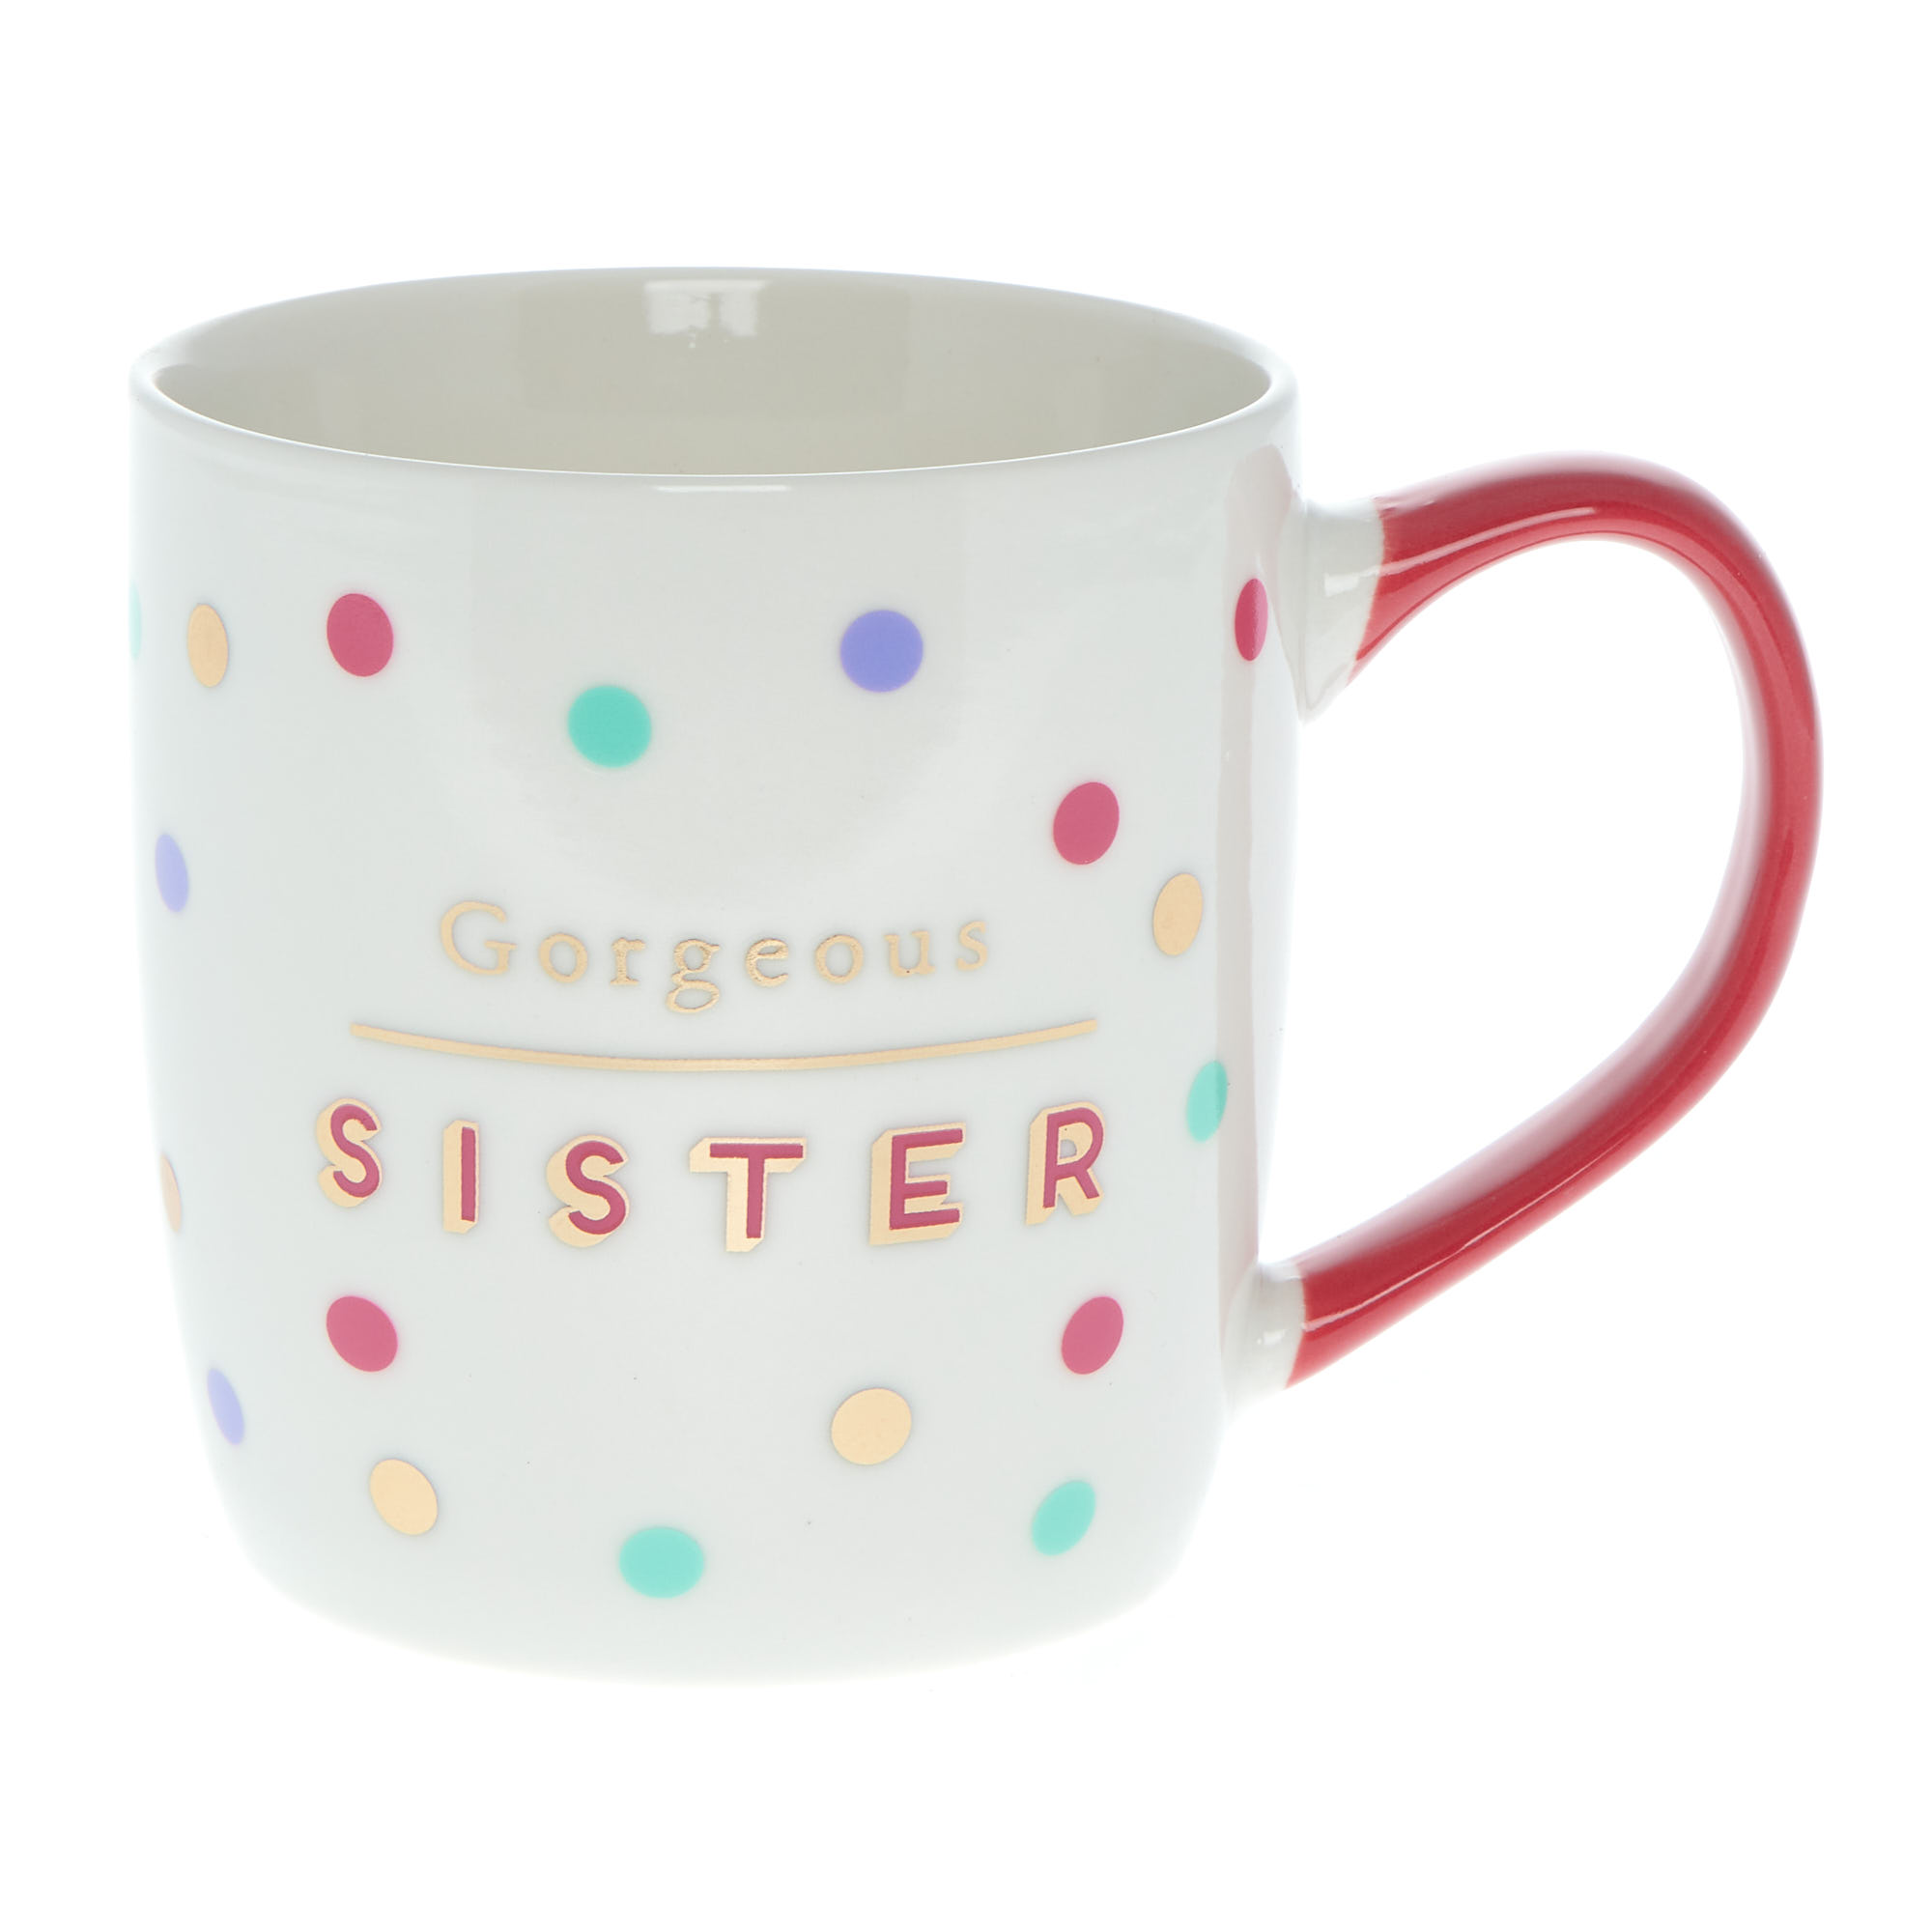 Gorgeous Sister Mug